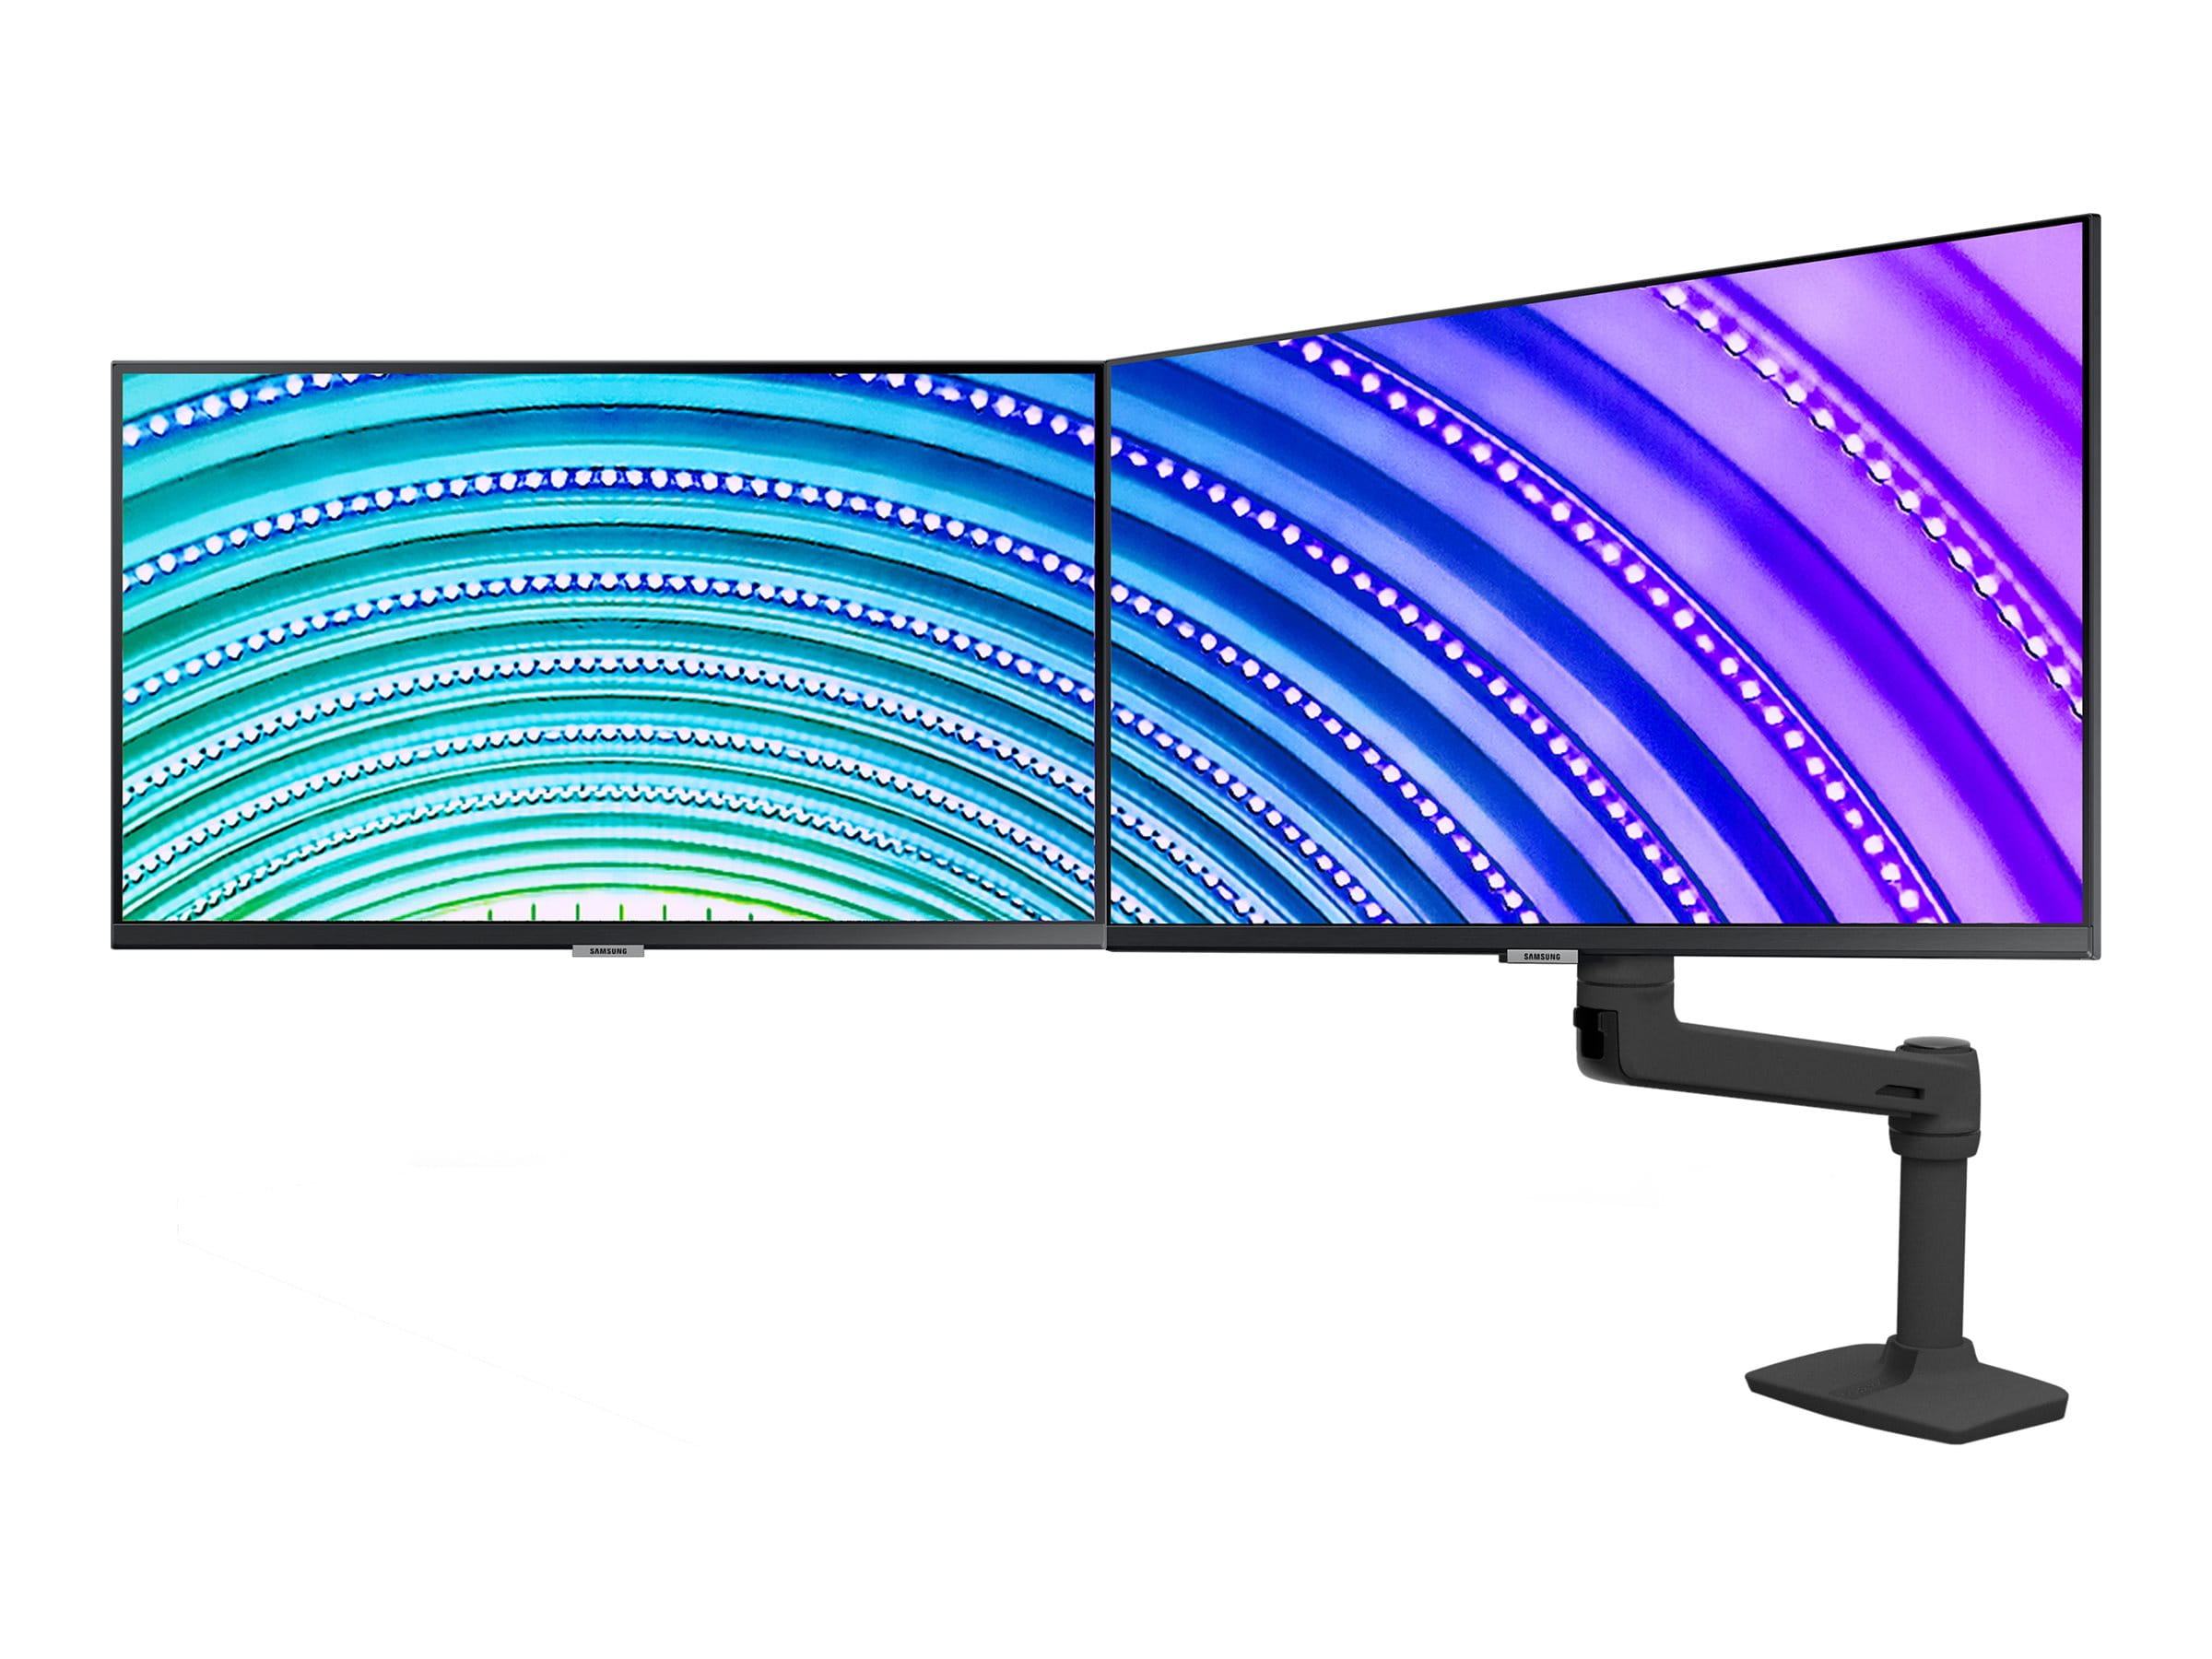 Ergotron LX - Befestigungskit (Gelenkarm, 2 Drehgelenke, Arm für zwei Bildschirme, Basis, 2-teilige Tischklemme, 8" Stange, Verlängerung) - für 2 LCD-Displays - dual direct - mattschwarz - Bildschirmgröße: bis zu 63,5 cm (bis zu 25 Zoll)